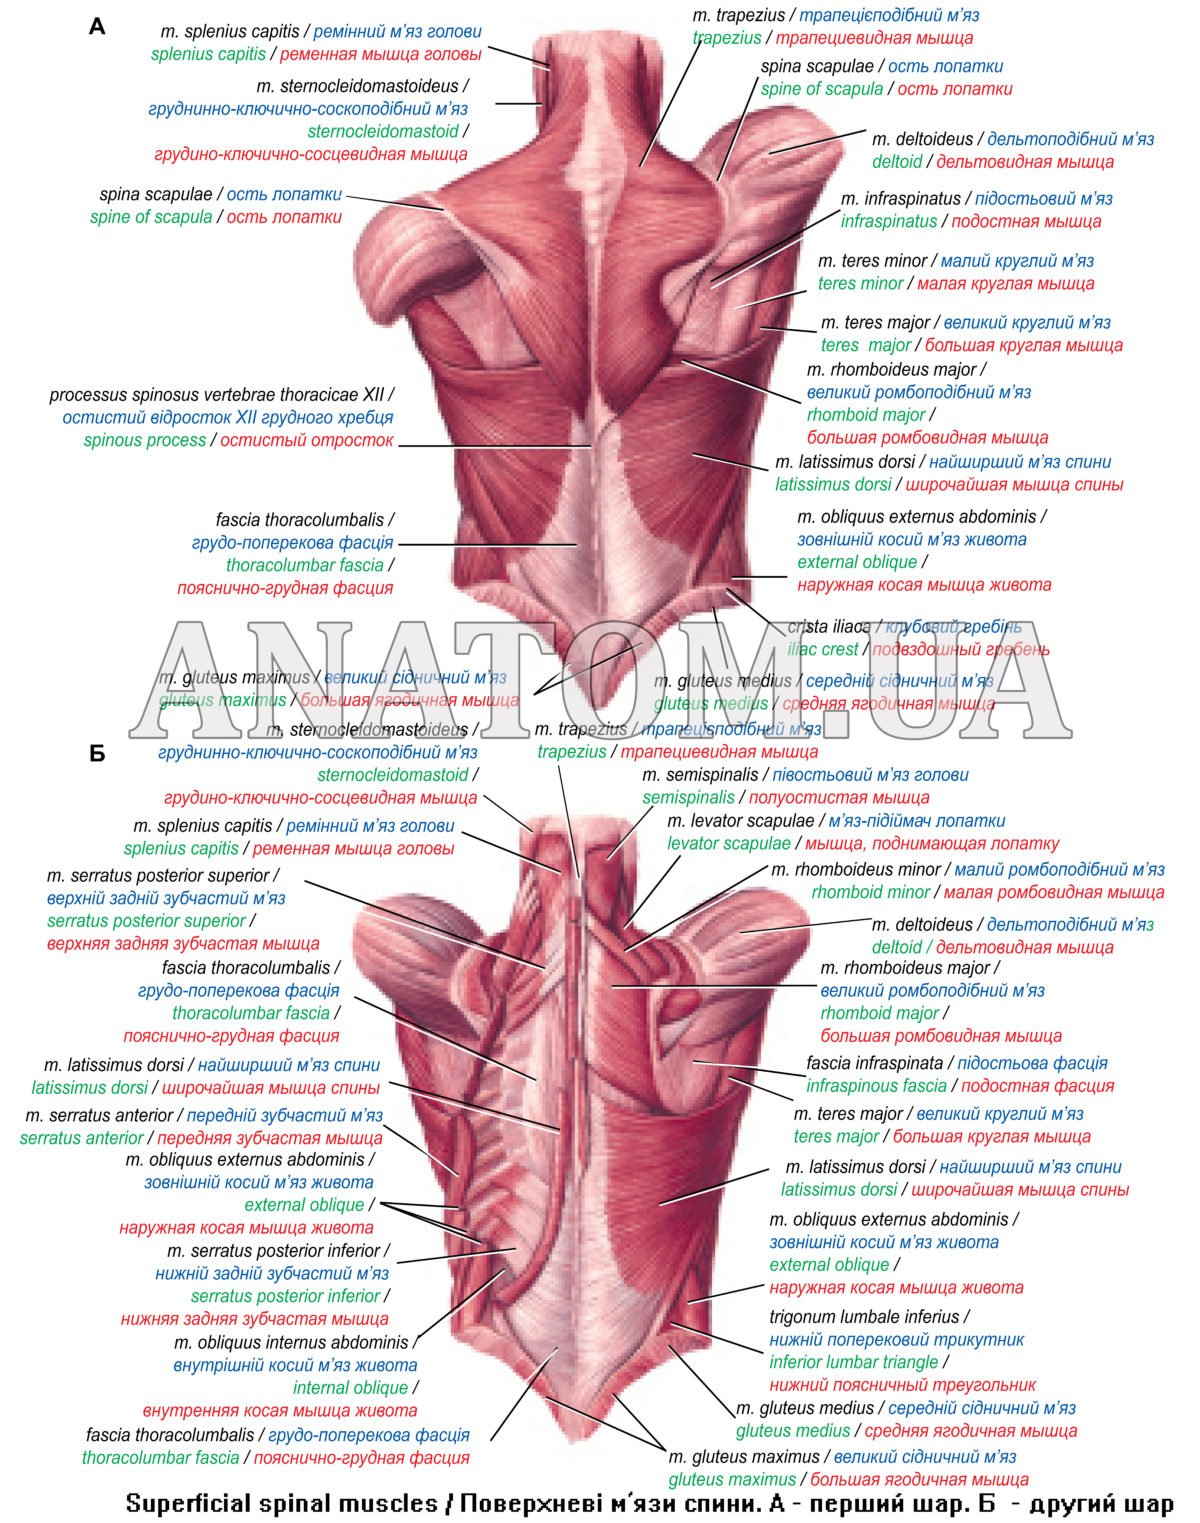 Поднимающая латынь. Апоневроз мышц спины. Поверхностные и глубокие мышцы спины , фасции спины. Апоневроз широчайшей мышцы спины функции. Фасция широчайшей мышцы спины.